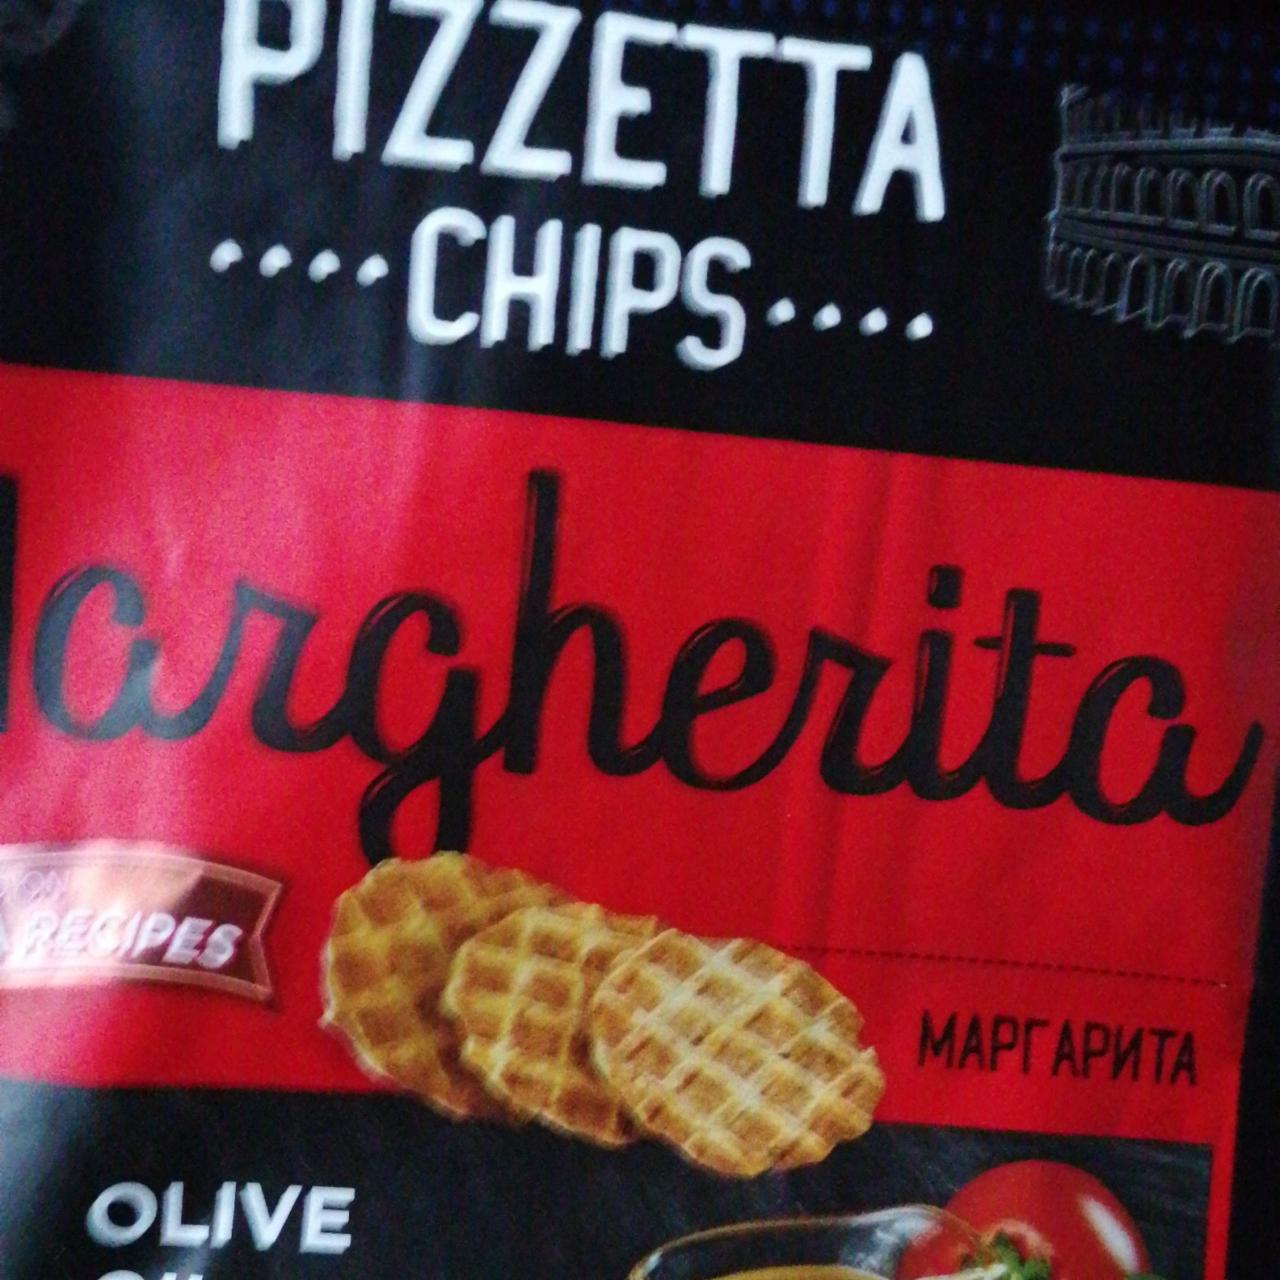 Fotografie - Pizzeta chips Margherita Snacks of the world